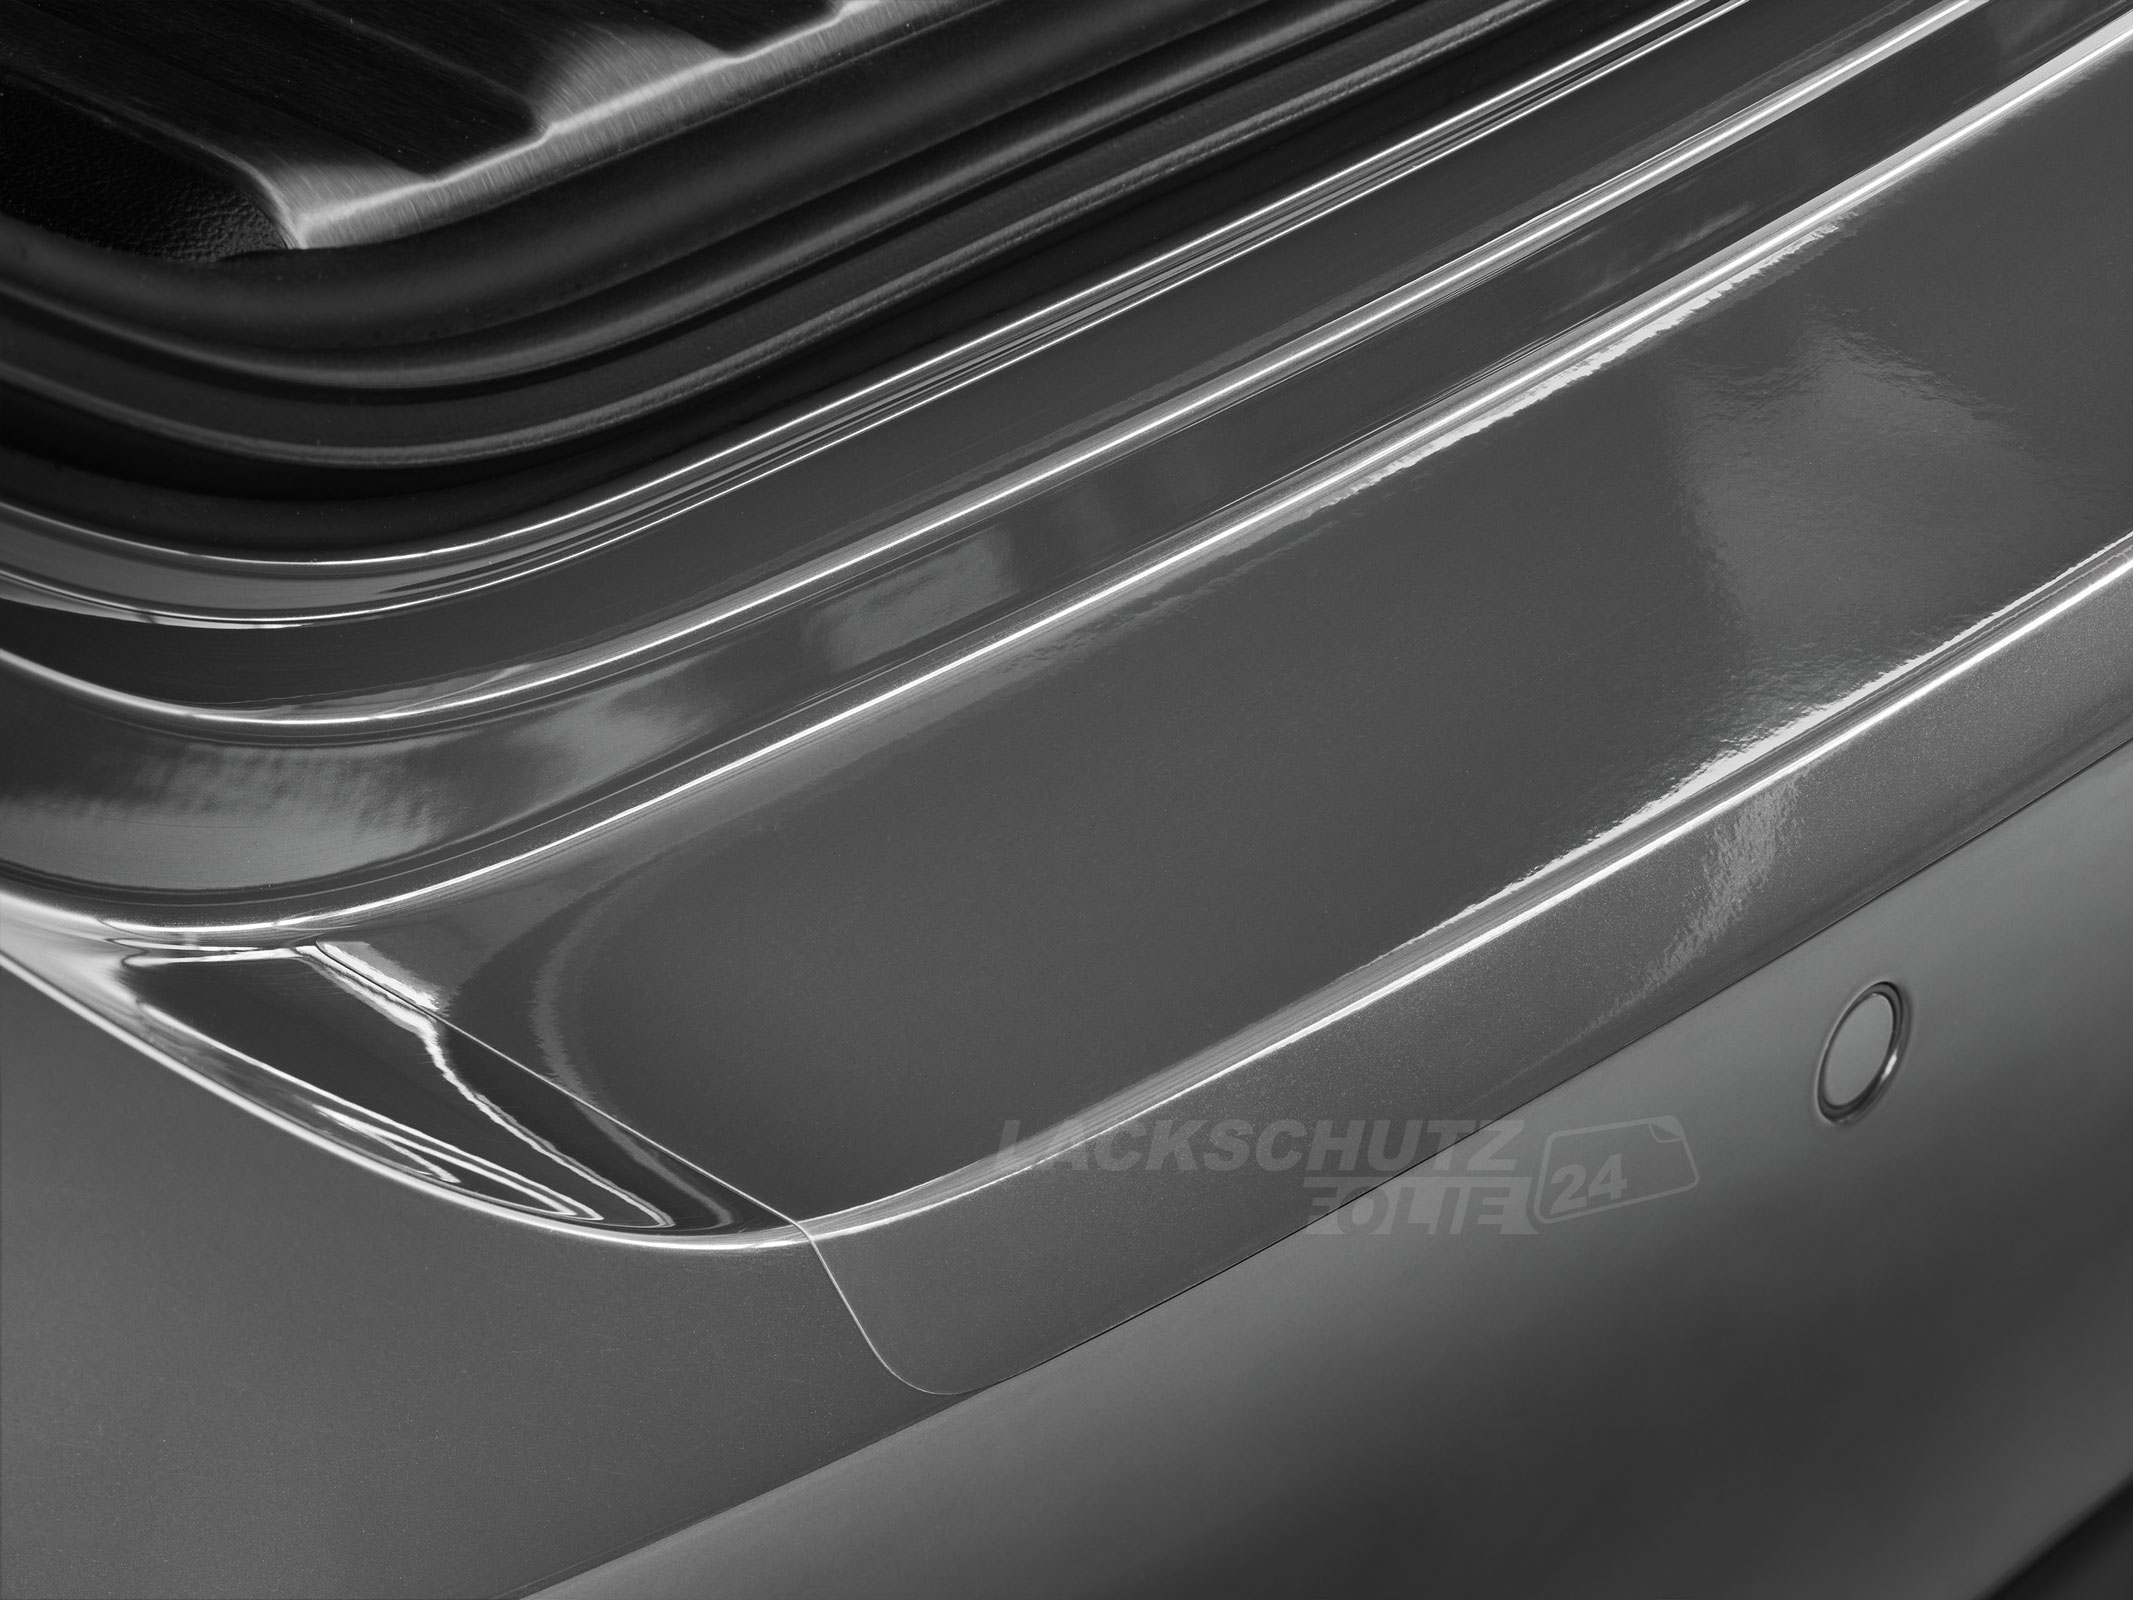 Ladekantenschutzfolie - Transparent Glatt Hochglänzend 150 µm stark für VW / Volkswagen Touran (II) Typ 5T, ab BJ 08/2015